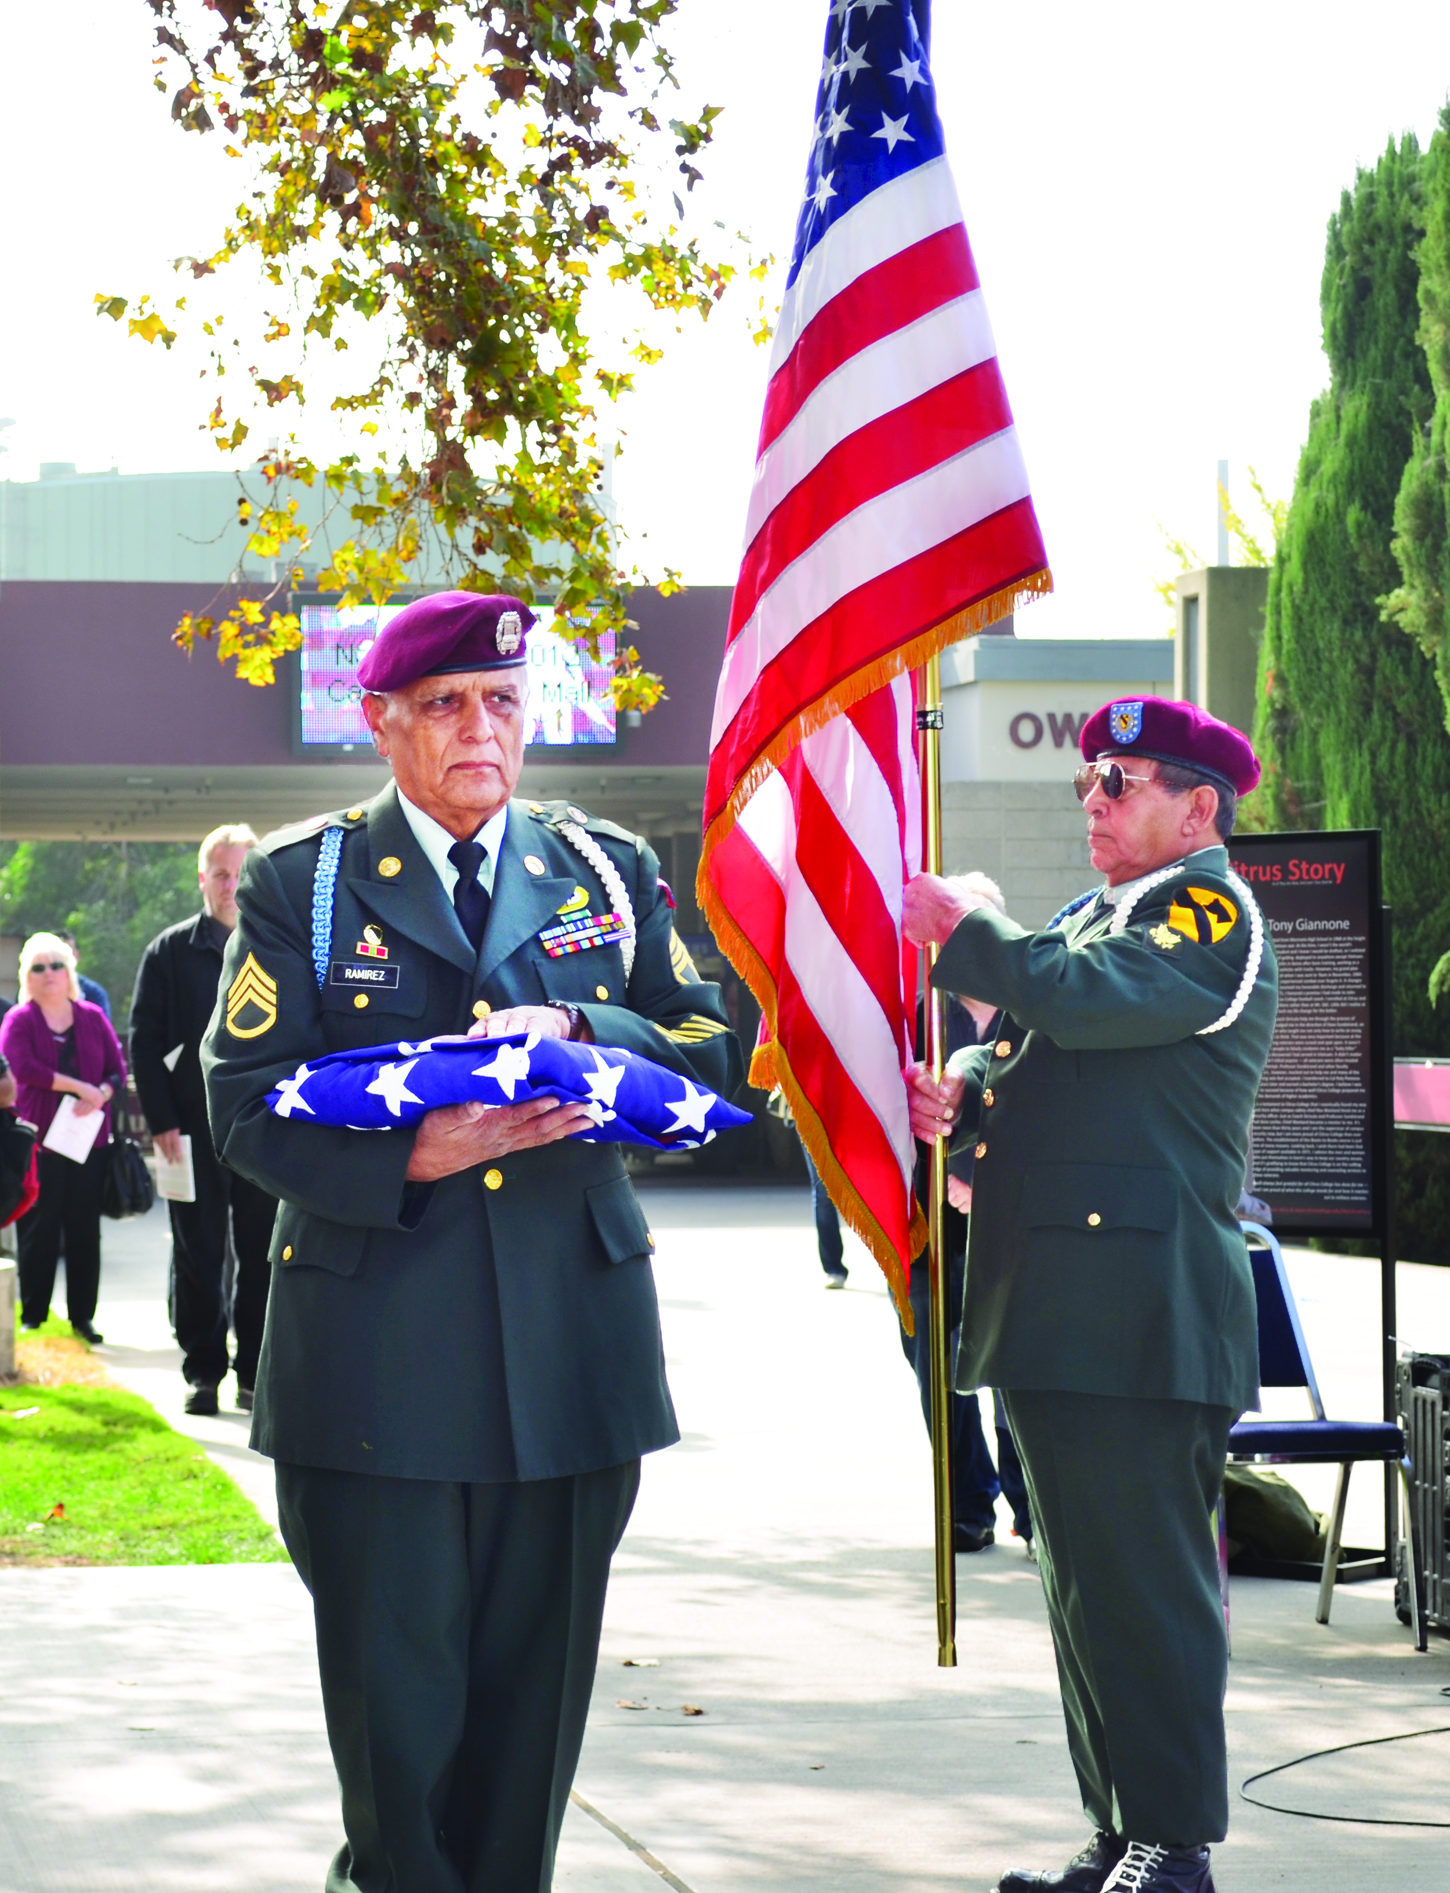 “Salute” celebrates, honors veterans